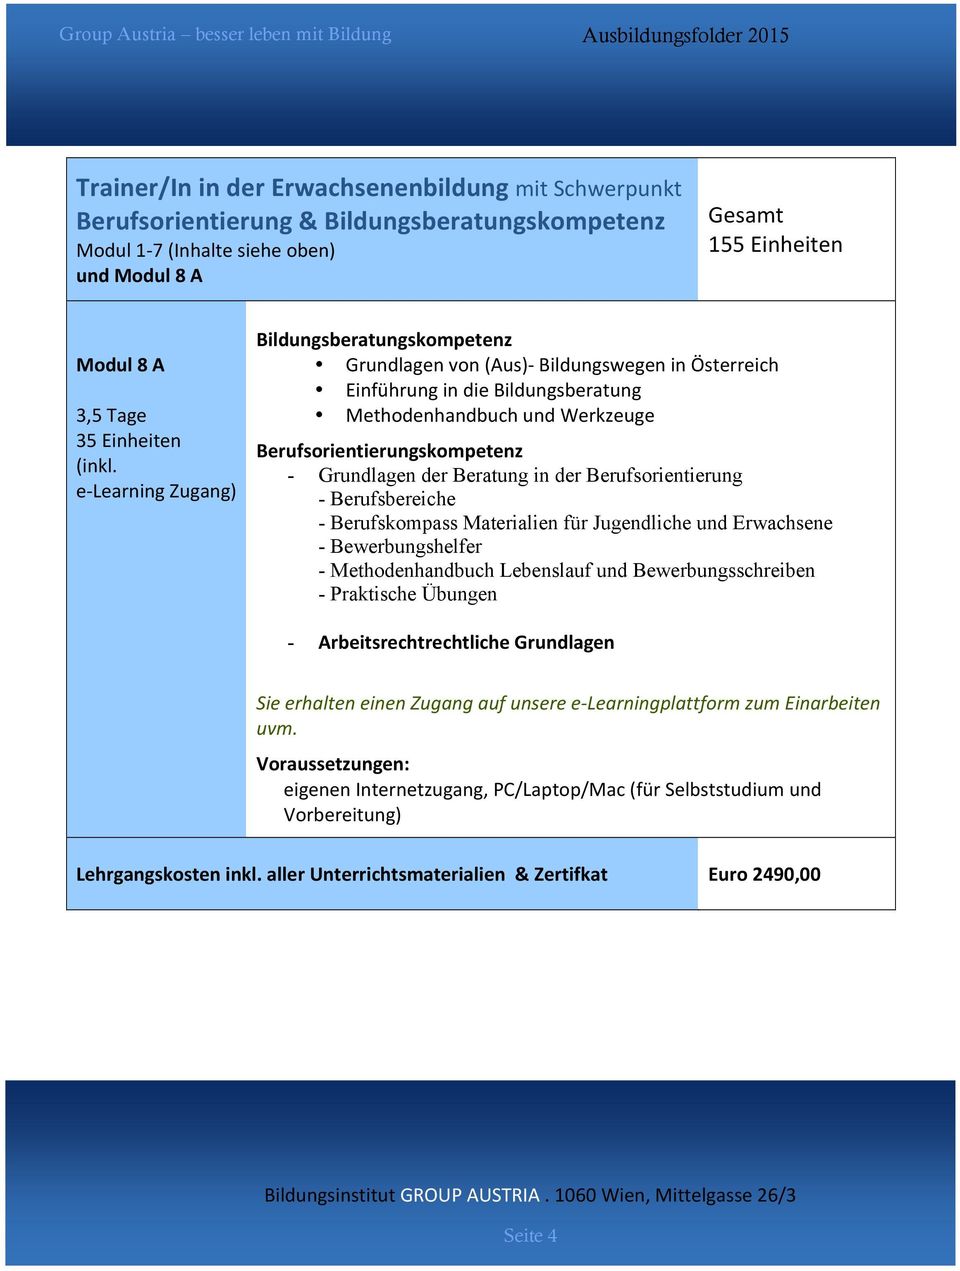 e- Learning Zugang) Bildungsberatungskompetenz Grundlagen von (Aus)- Bildungswegen in Österreich Einführung in die Bildungsberatung Methodenhandbuch und Werkzeuge Berufsorientierungskompetenz -